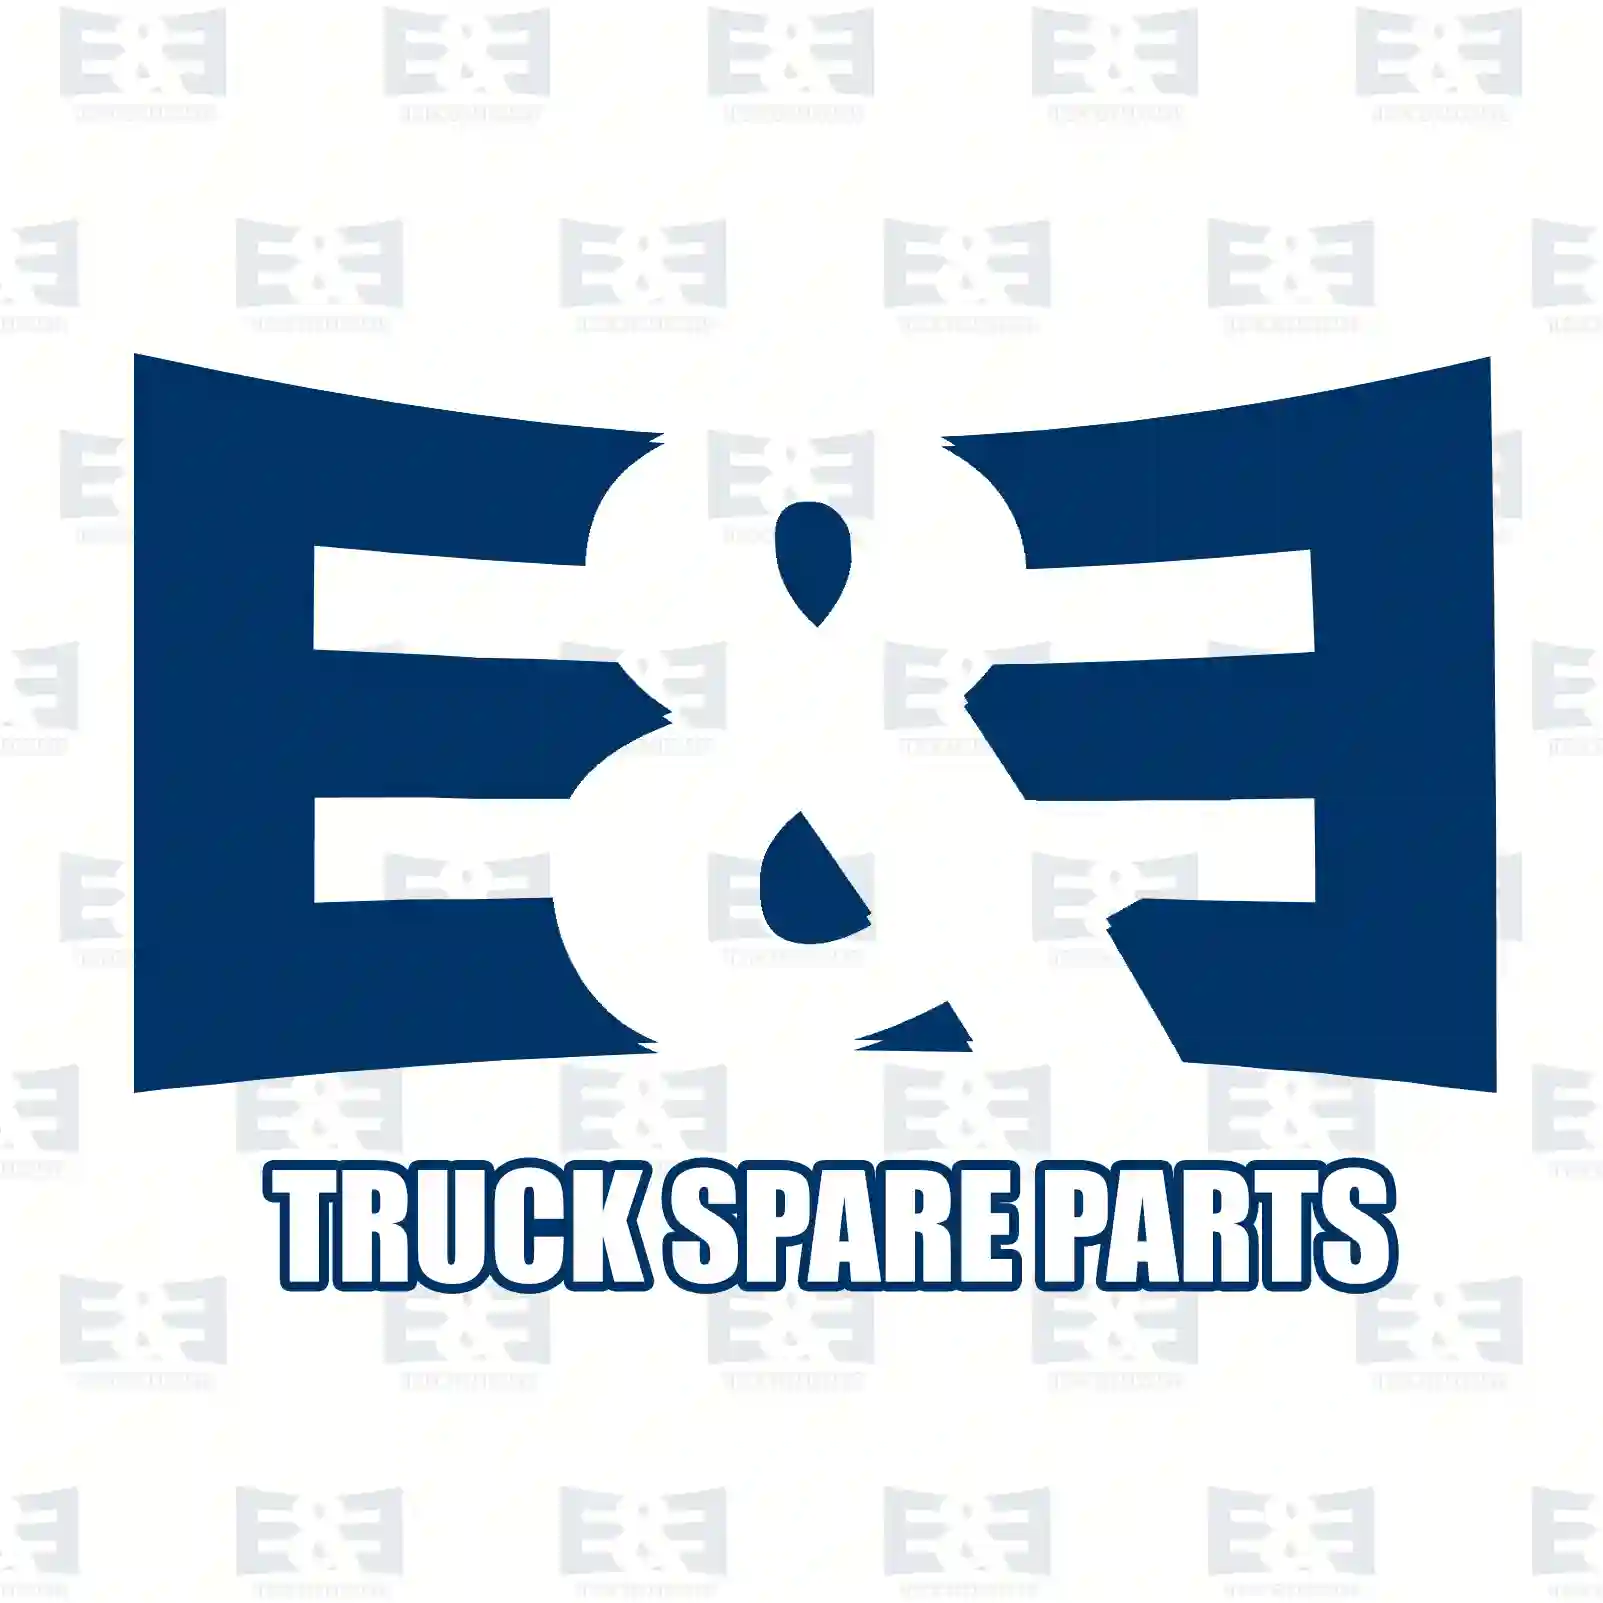 Ball, 2E2285937, 205 ||  2E2285937 E&E Truck Spare Parts | Truck Spare Parts, Auotomotive Spare Parts Ball, 2E2285937, 205 ||  2E2285937 E&E Truck Spare Parts | Truck Spare Parts, Auotomotive Spare Parts